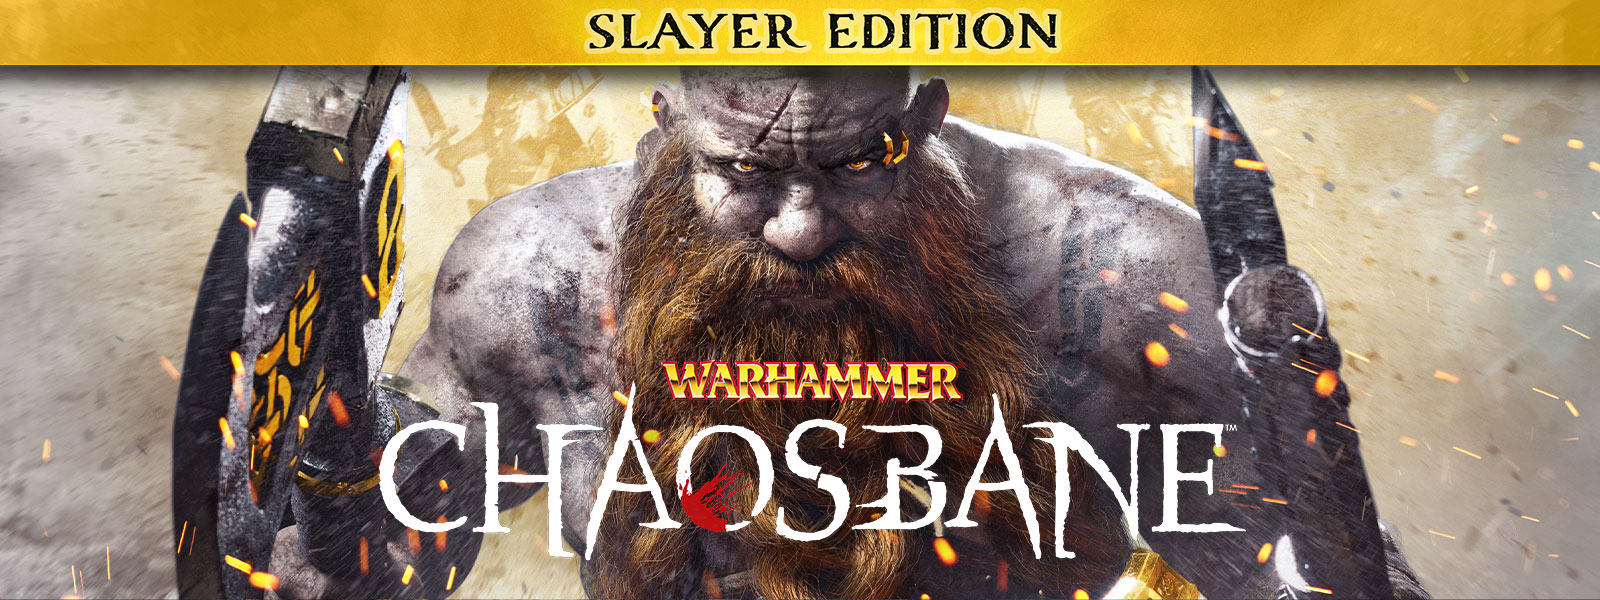 『Warhammer: Chaosbane – Slayer Edition』、髭を生やした男が炎や火花の中を歩み、両手に斧を抱えている。